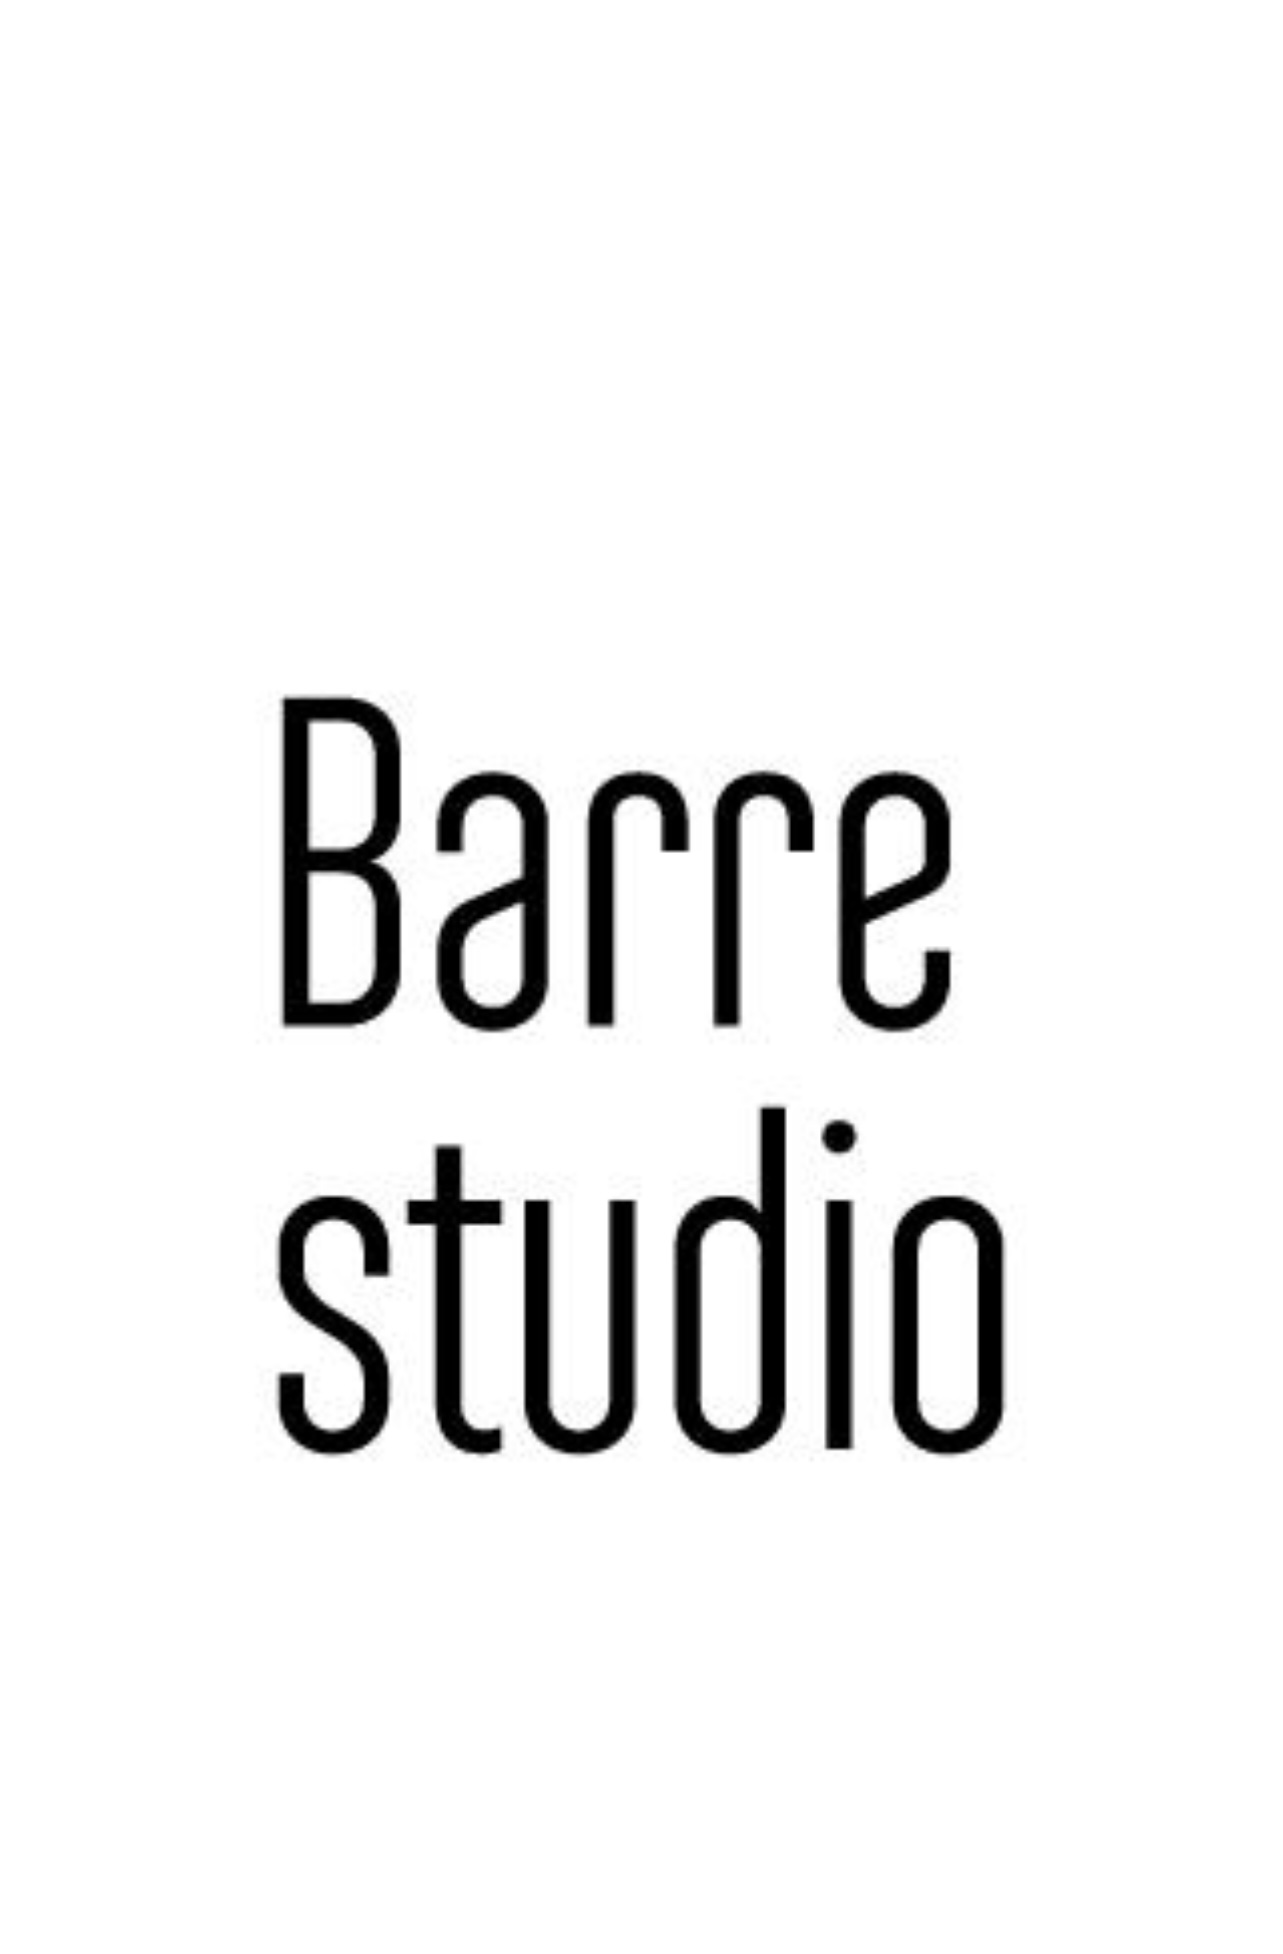 Barre studio